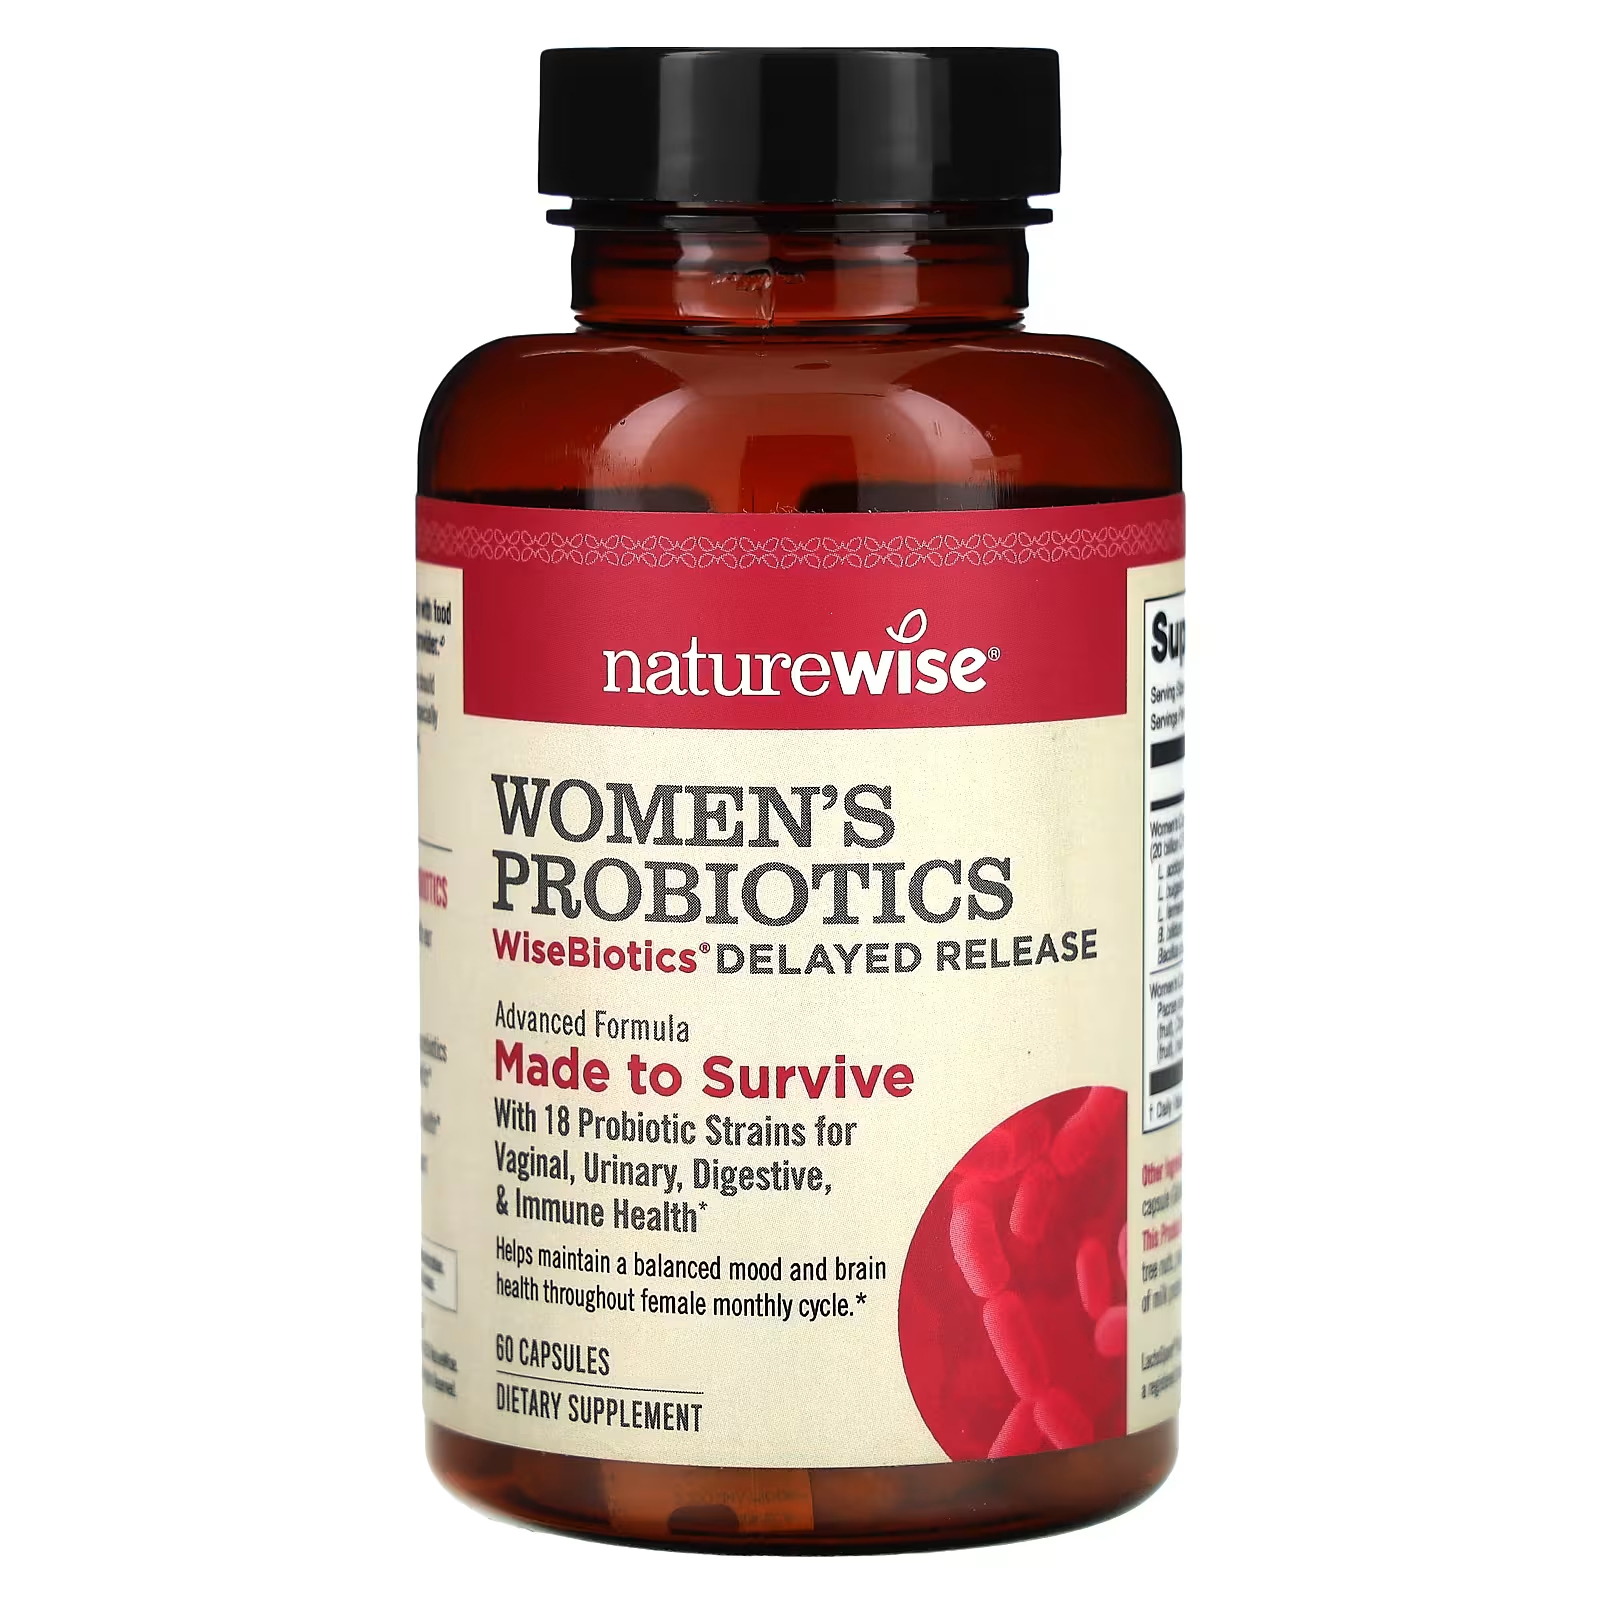 Женские пробиотики WiseBiotics с отсроченным выпуском, 60 капсул NatureWise